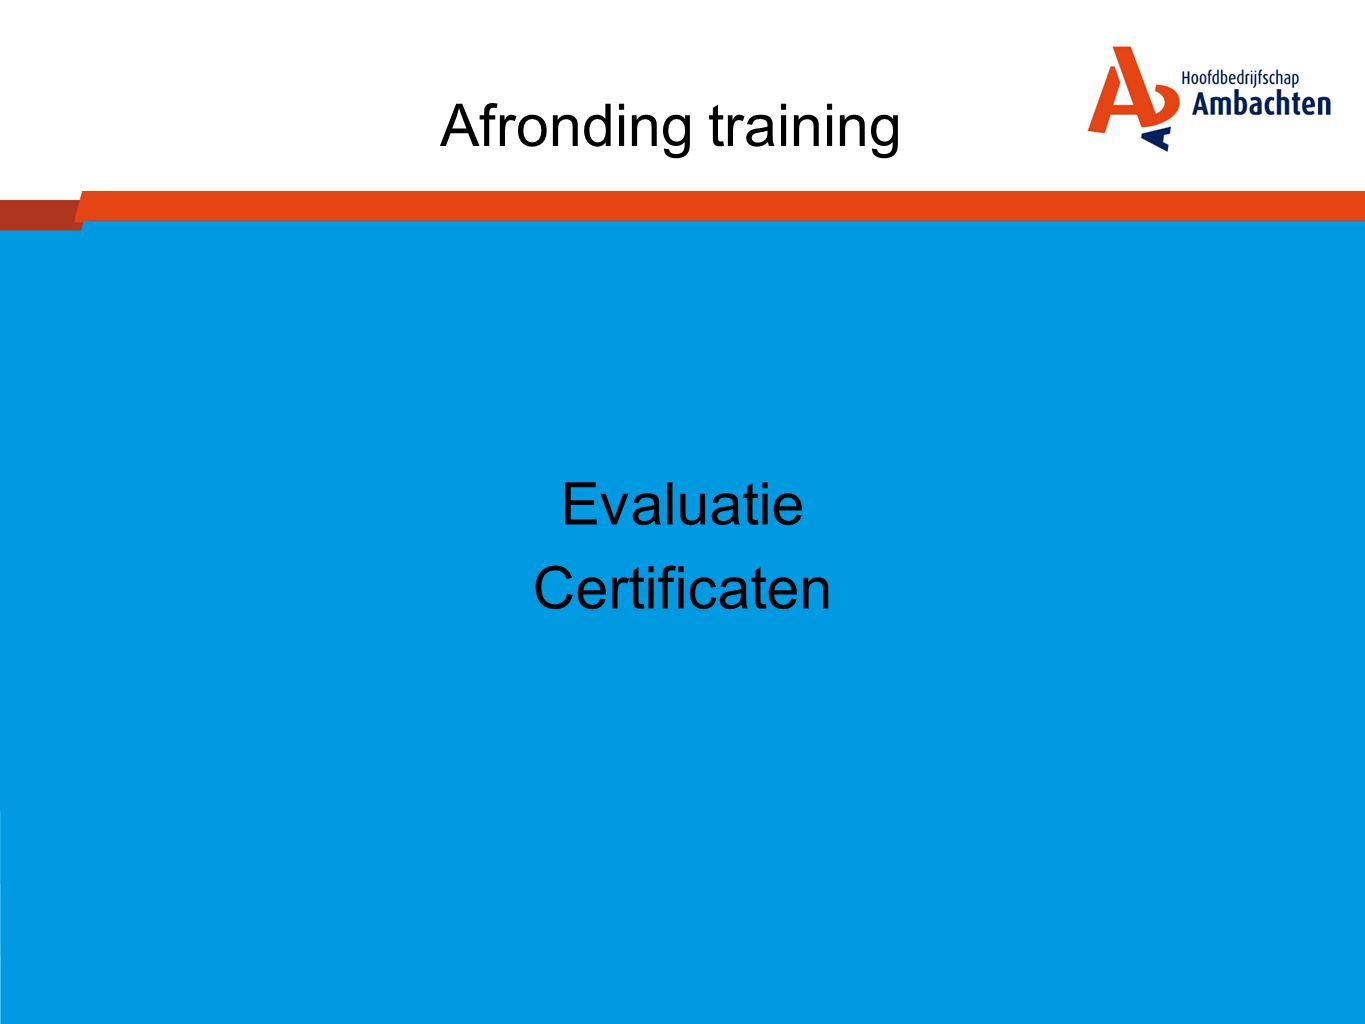 Evaluatie Certificaten